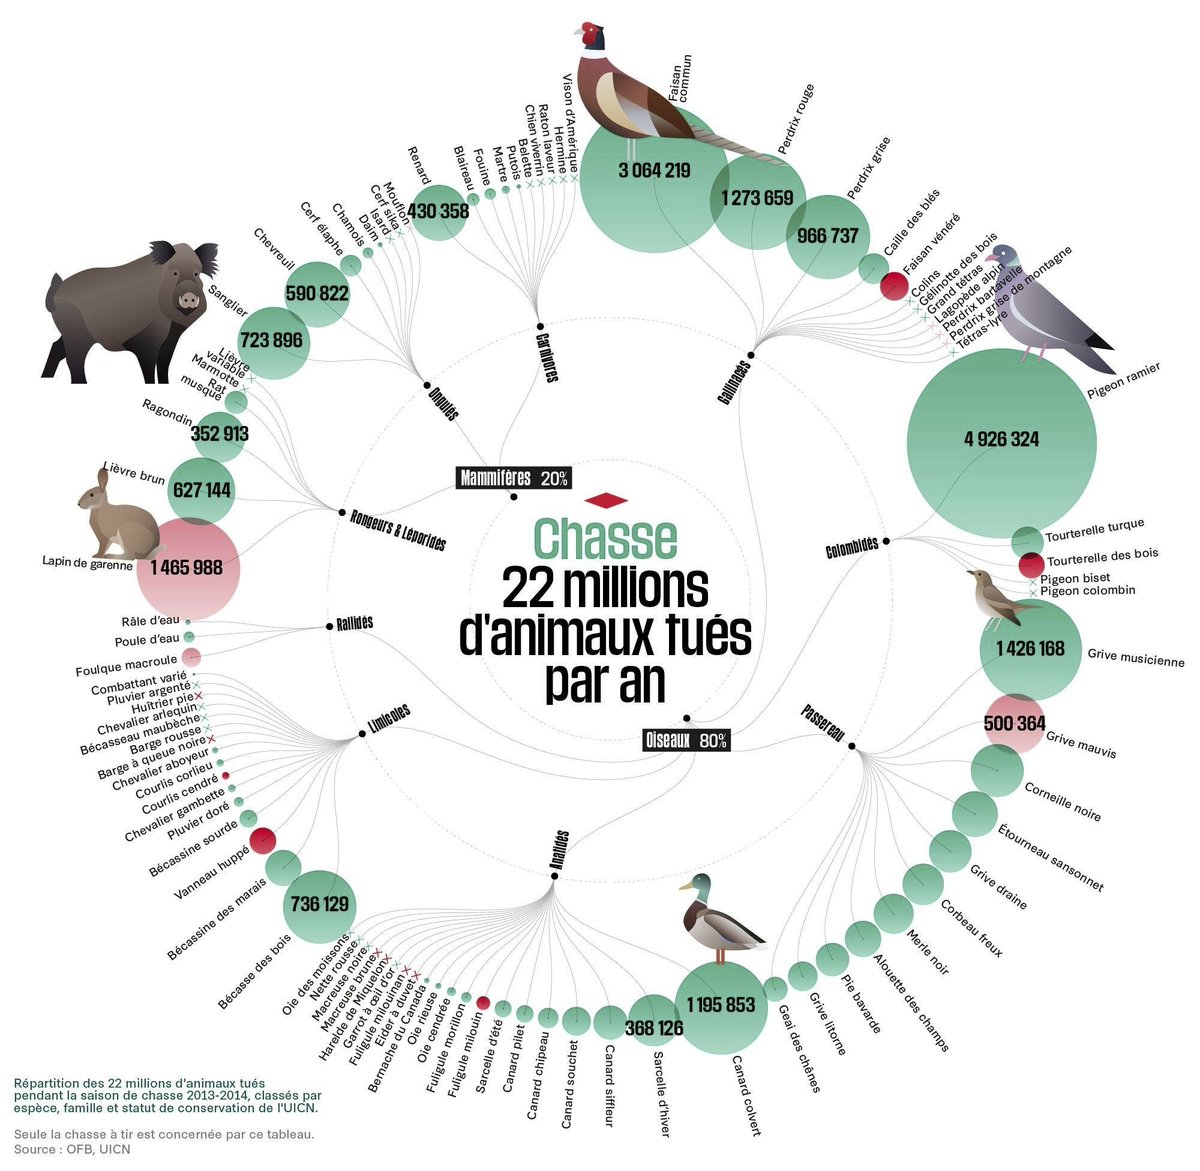 Les chasseurs français tuent plus de 22 millions d’animaux par an.  

#france #ruralité #ruralitéAntichasse #antichasse #chasseurTueur #chasseperversion #TuerEstLeurPlaisir #9Juin #ElectionEuropéenne #Européenne2024